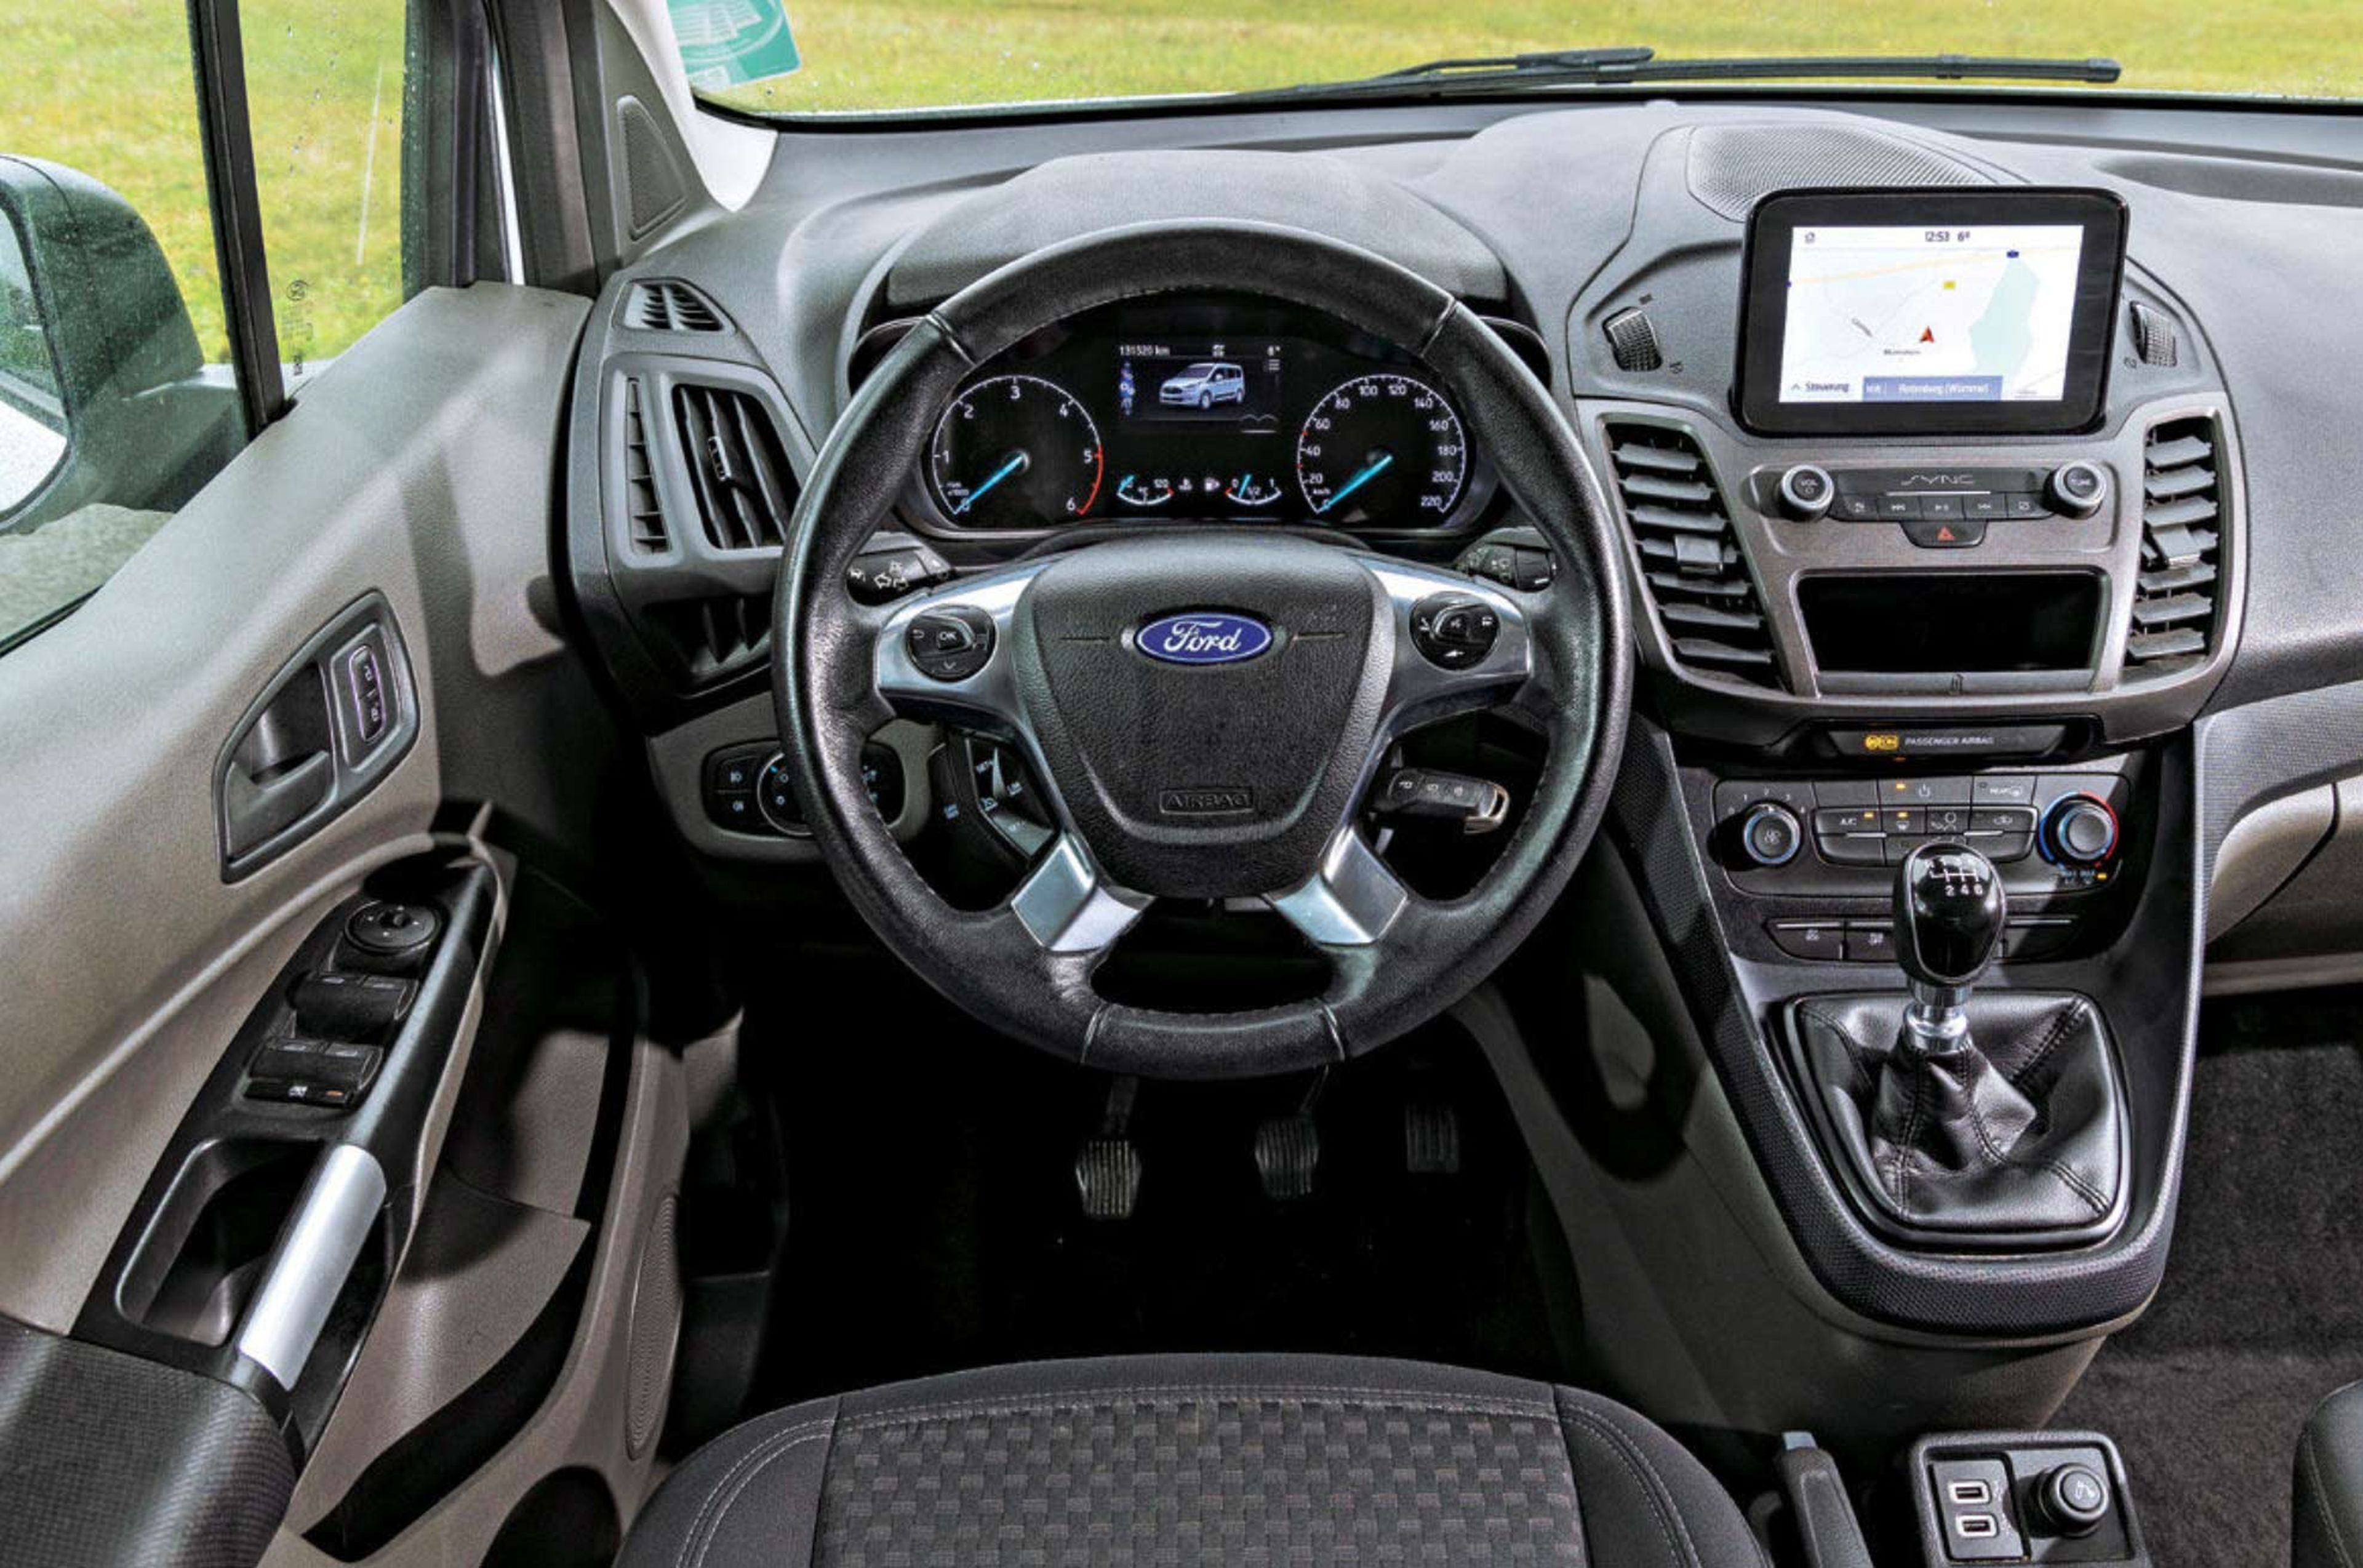 Prueba de segunda mano de la Ford Tourneo Connect cockpit